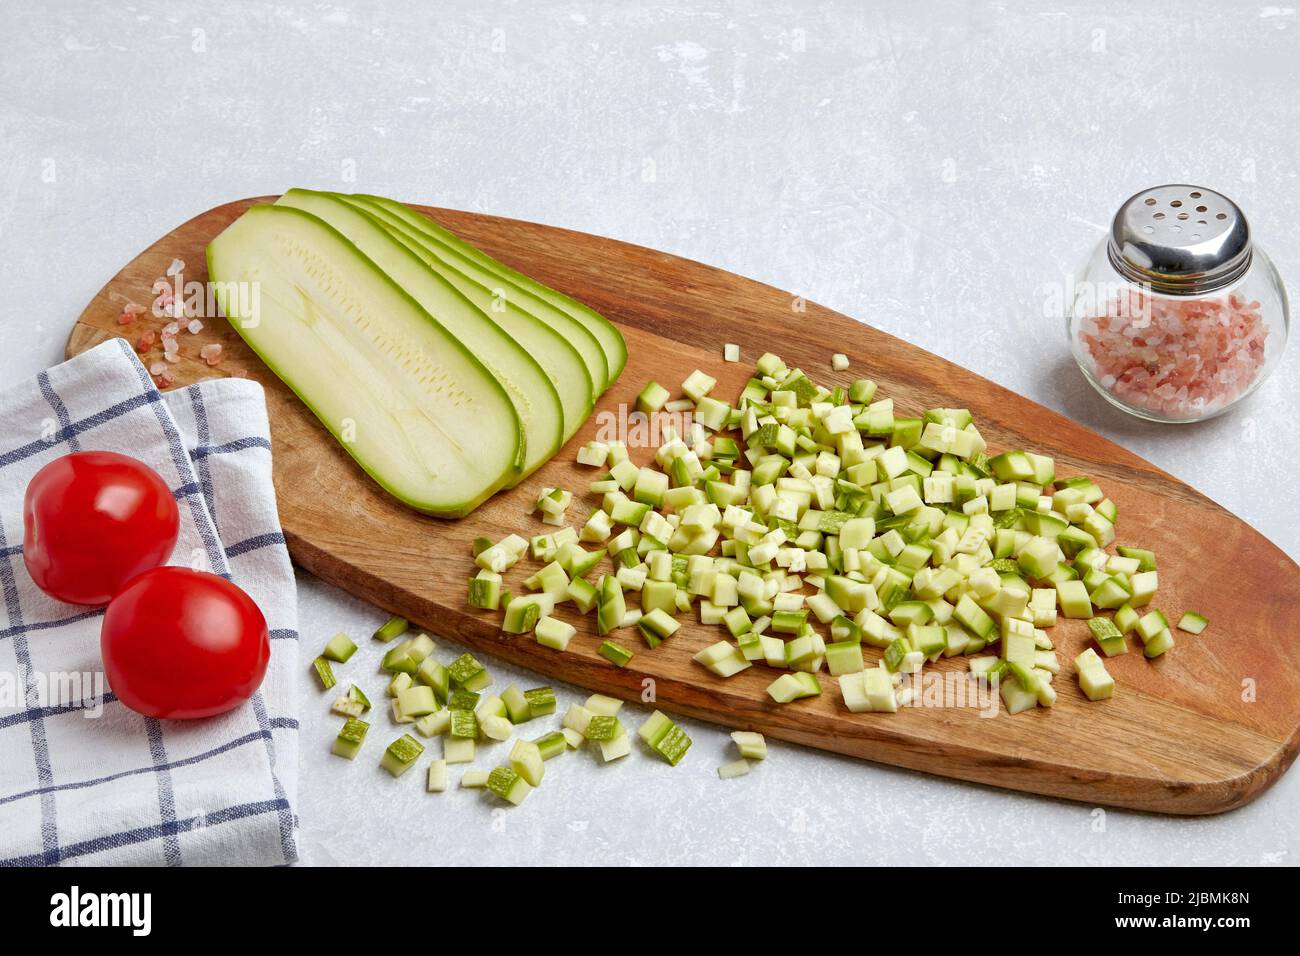 Zucchine a dadini tagliate a fette su un tagliere di legno, pomodori, sale rosa su un tavolo chiaro di cemento Foto Stock